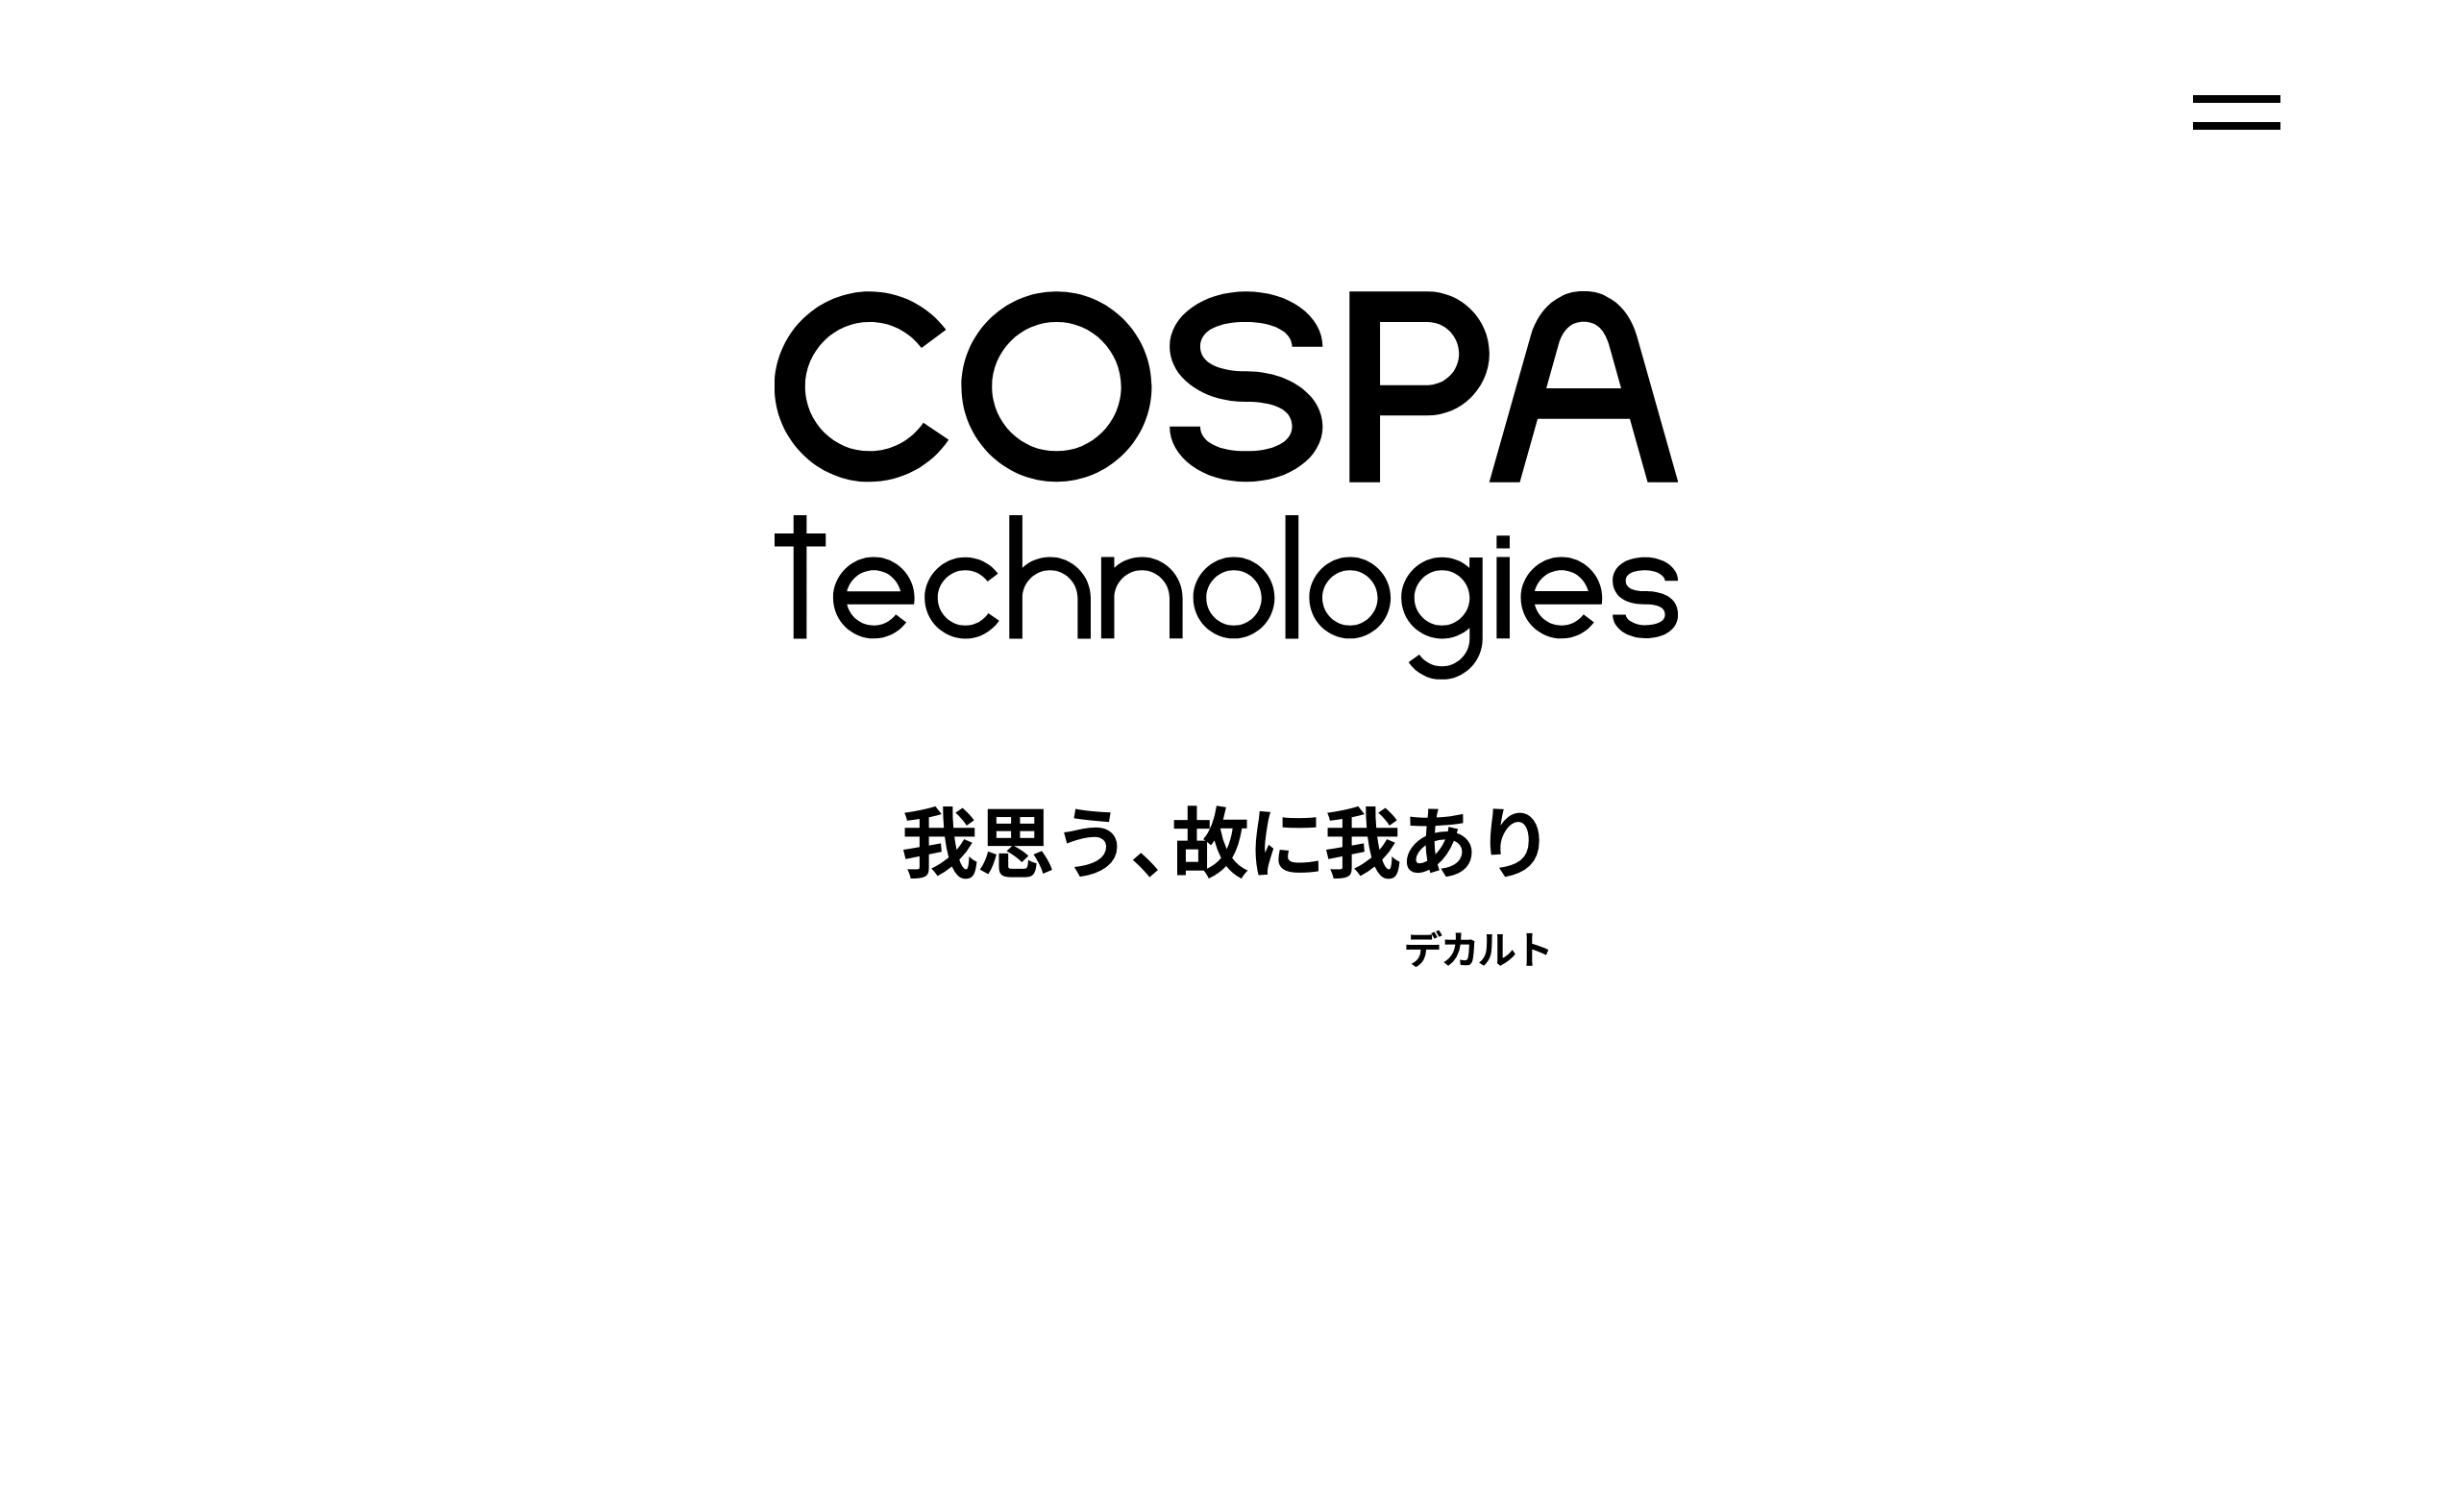 株式会社コスパ・テクノロジーズの株式会社コスパ・テクノロジーズ:Web広告サービス